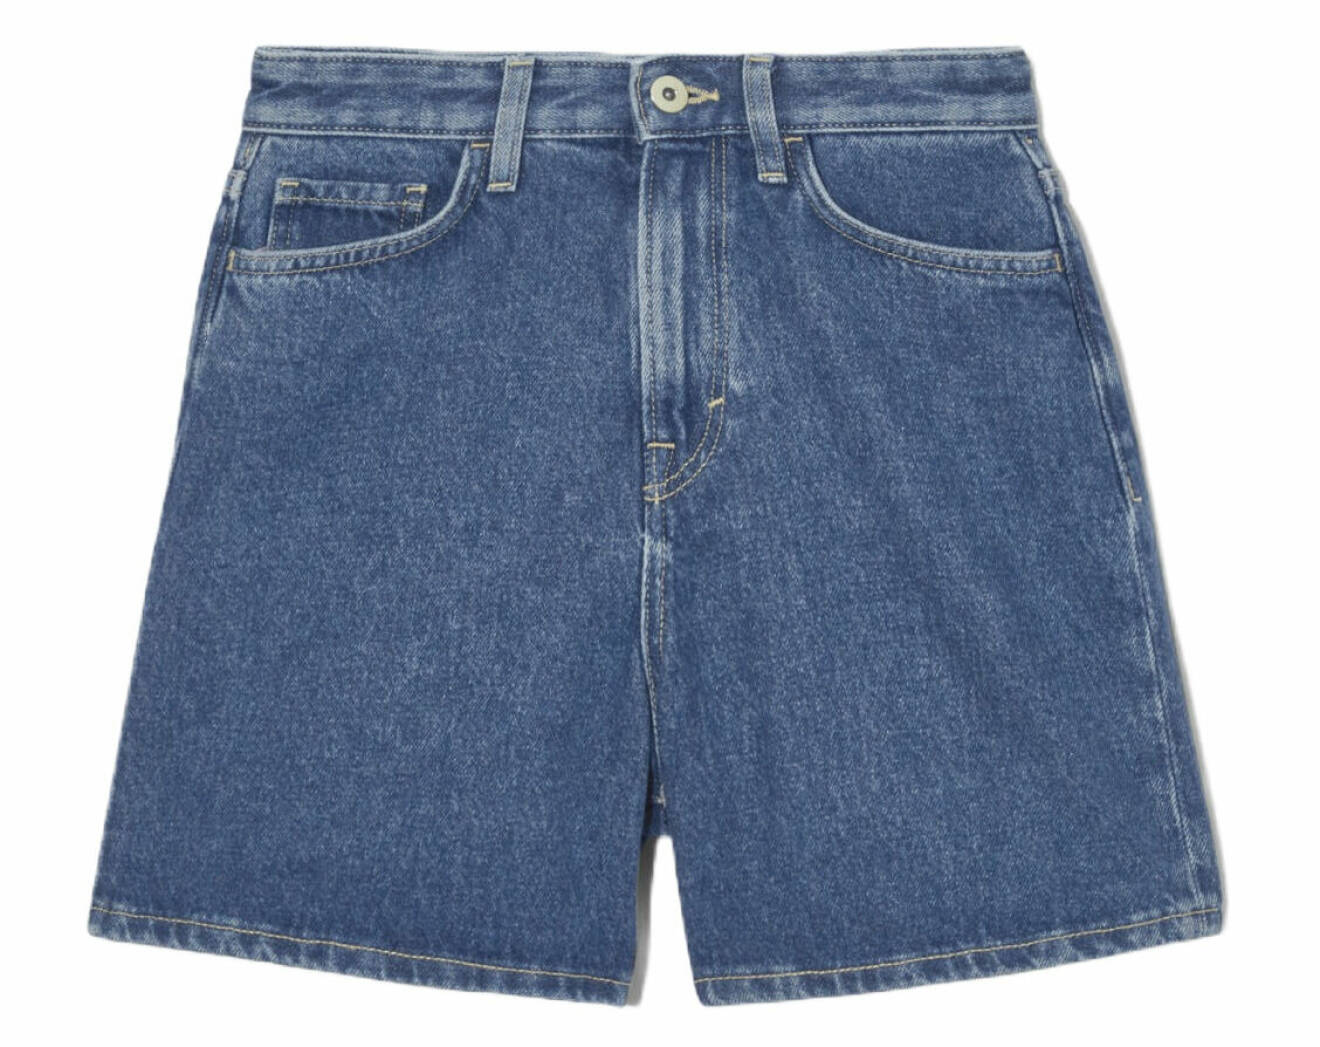 jeansshorts packlistan till solsemestern